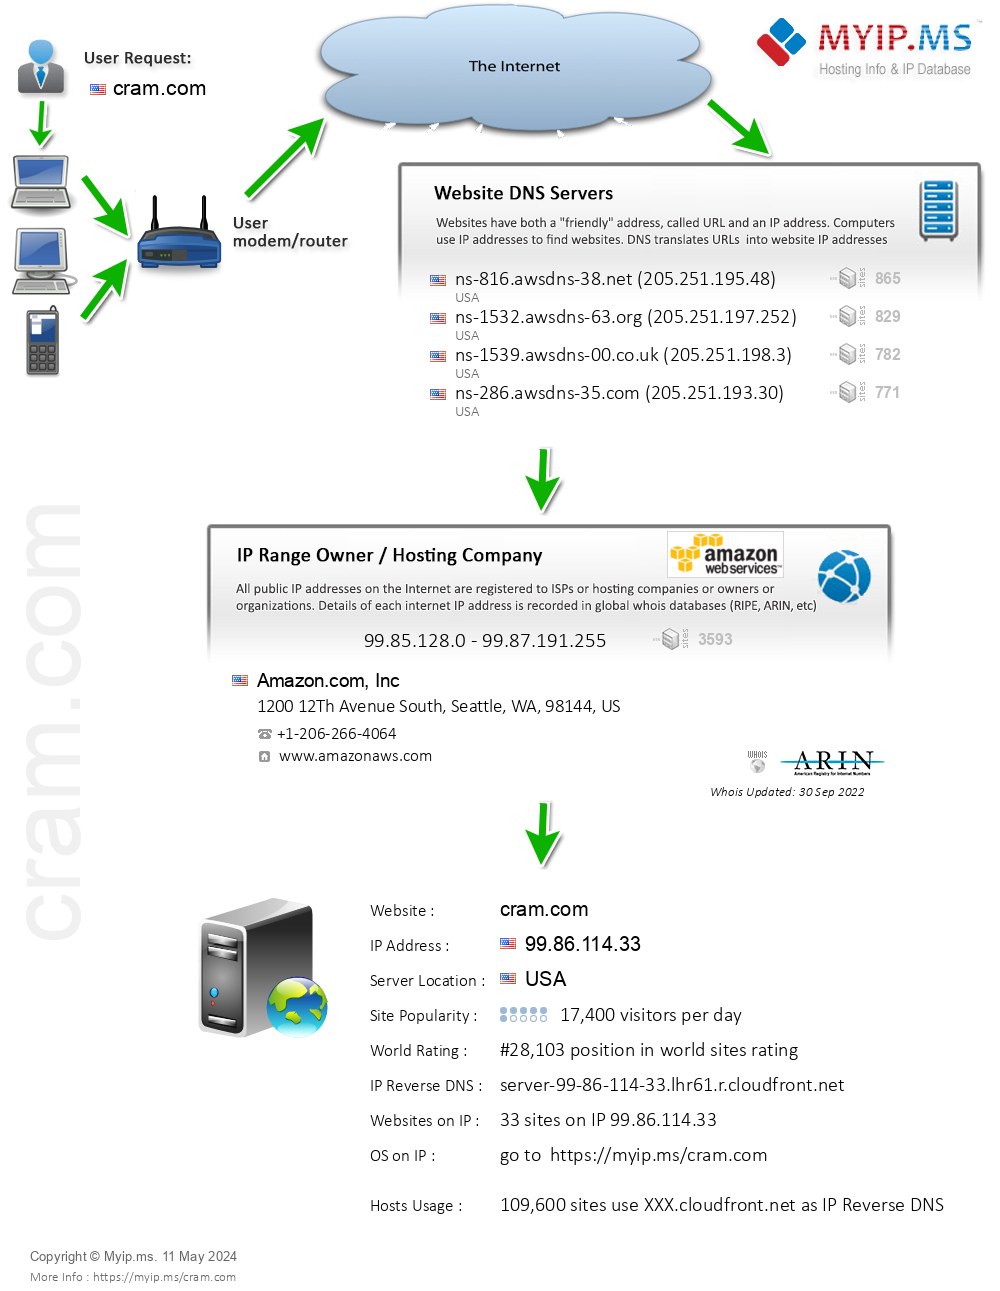 Cram.com - Website Hosting Visual IP Diagram